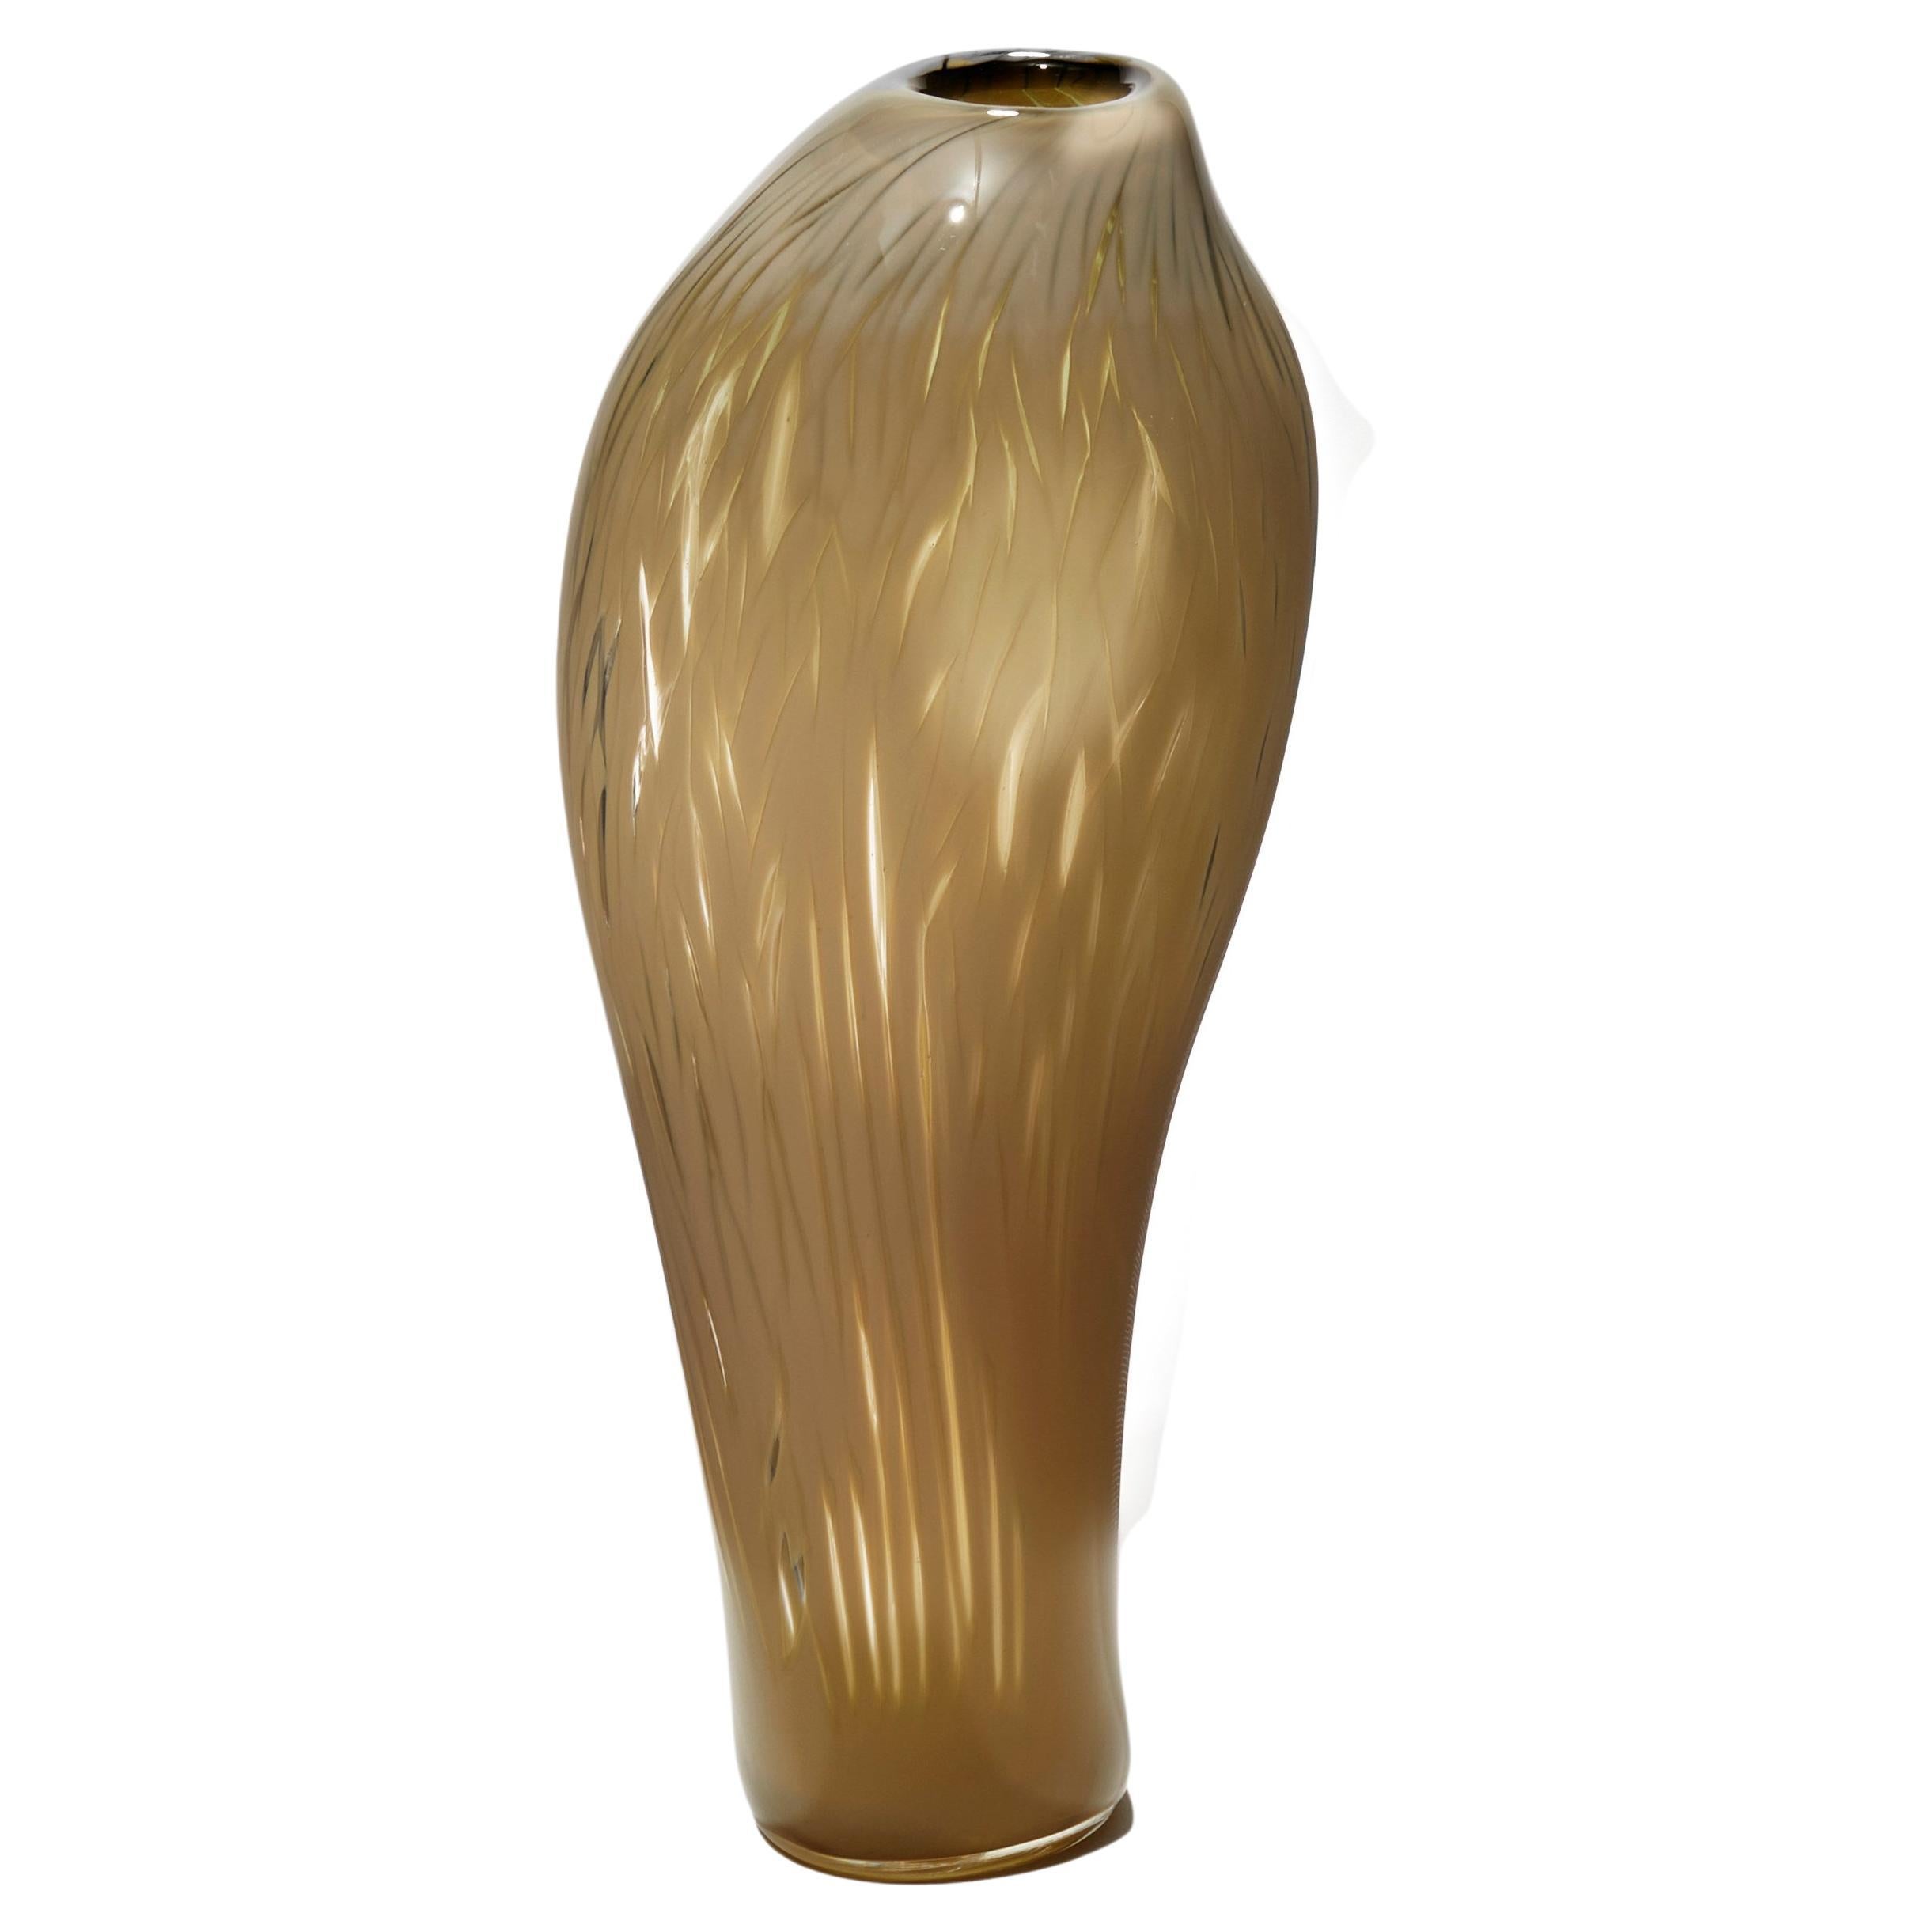 Cotinus II, a Beige / Light Brown Hand Blown Sculptural Vase by Michèle Oberdiek